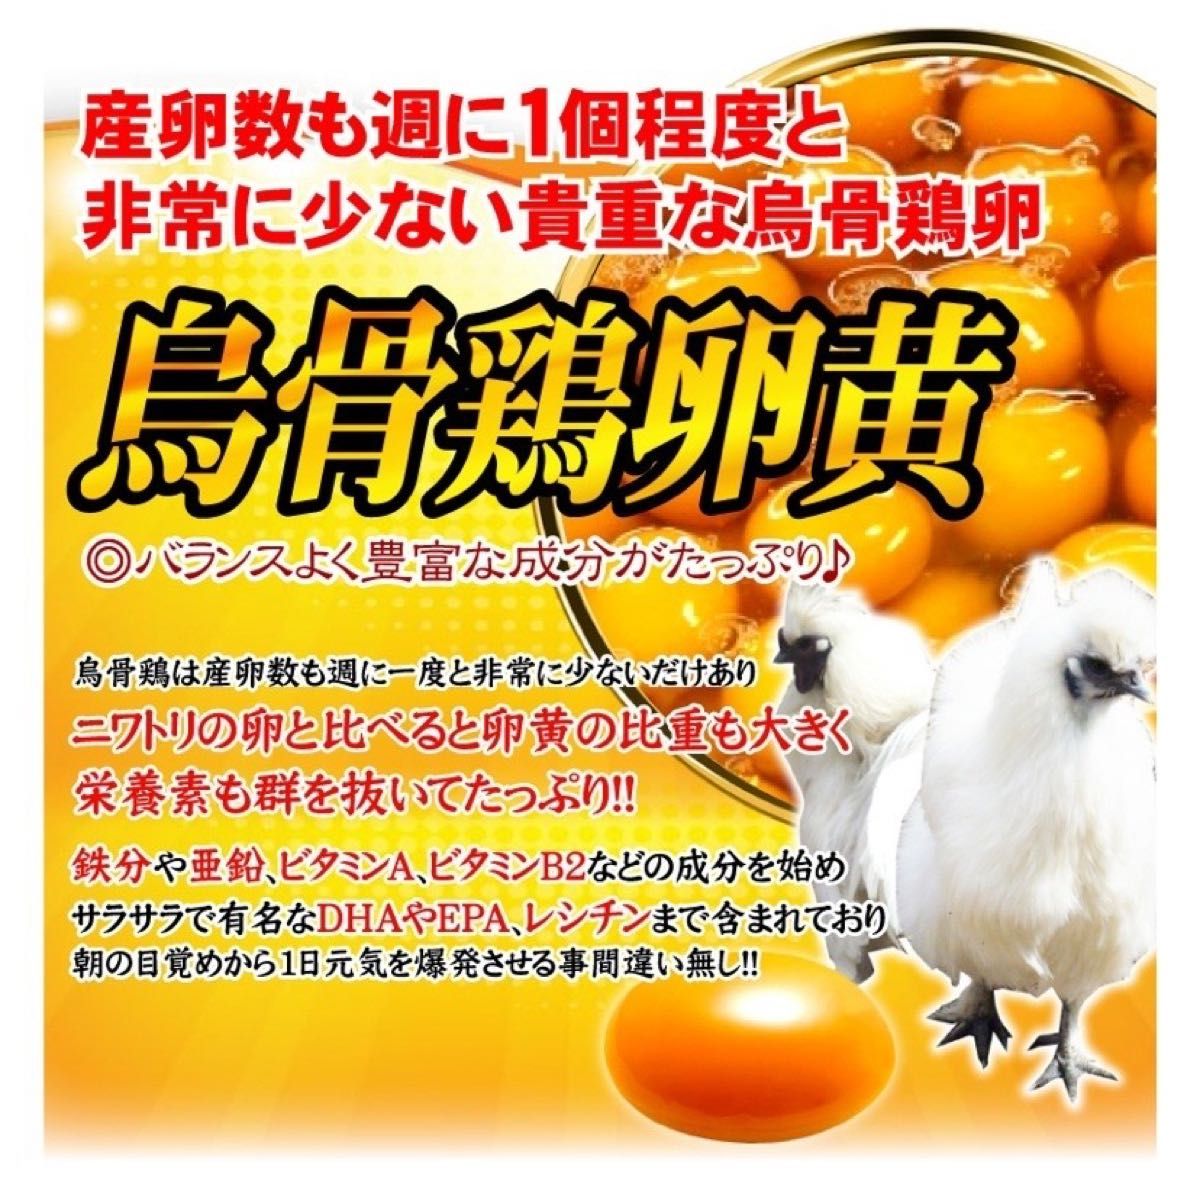 発酵黒にんにく卵黄サプリ+（マカ　ウコン　ビタミン　アミノ酸など）6ケ月分